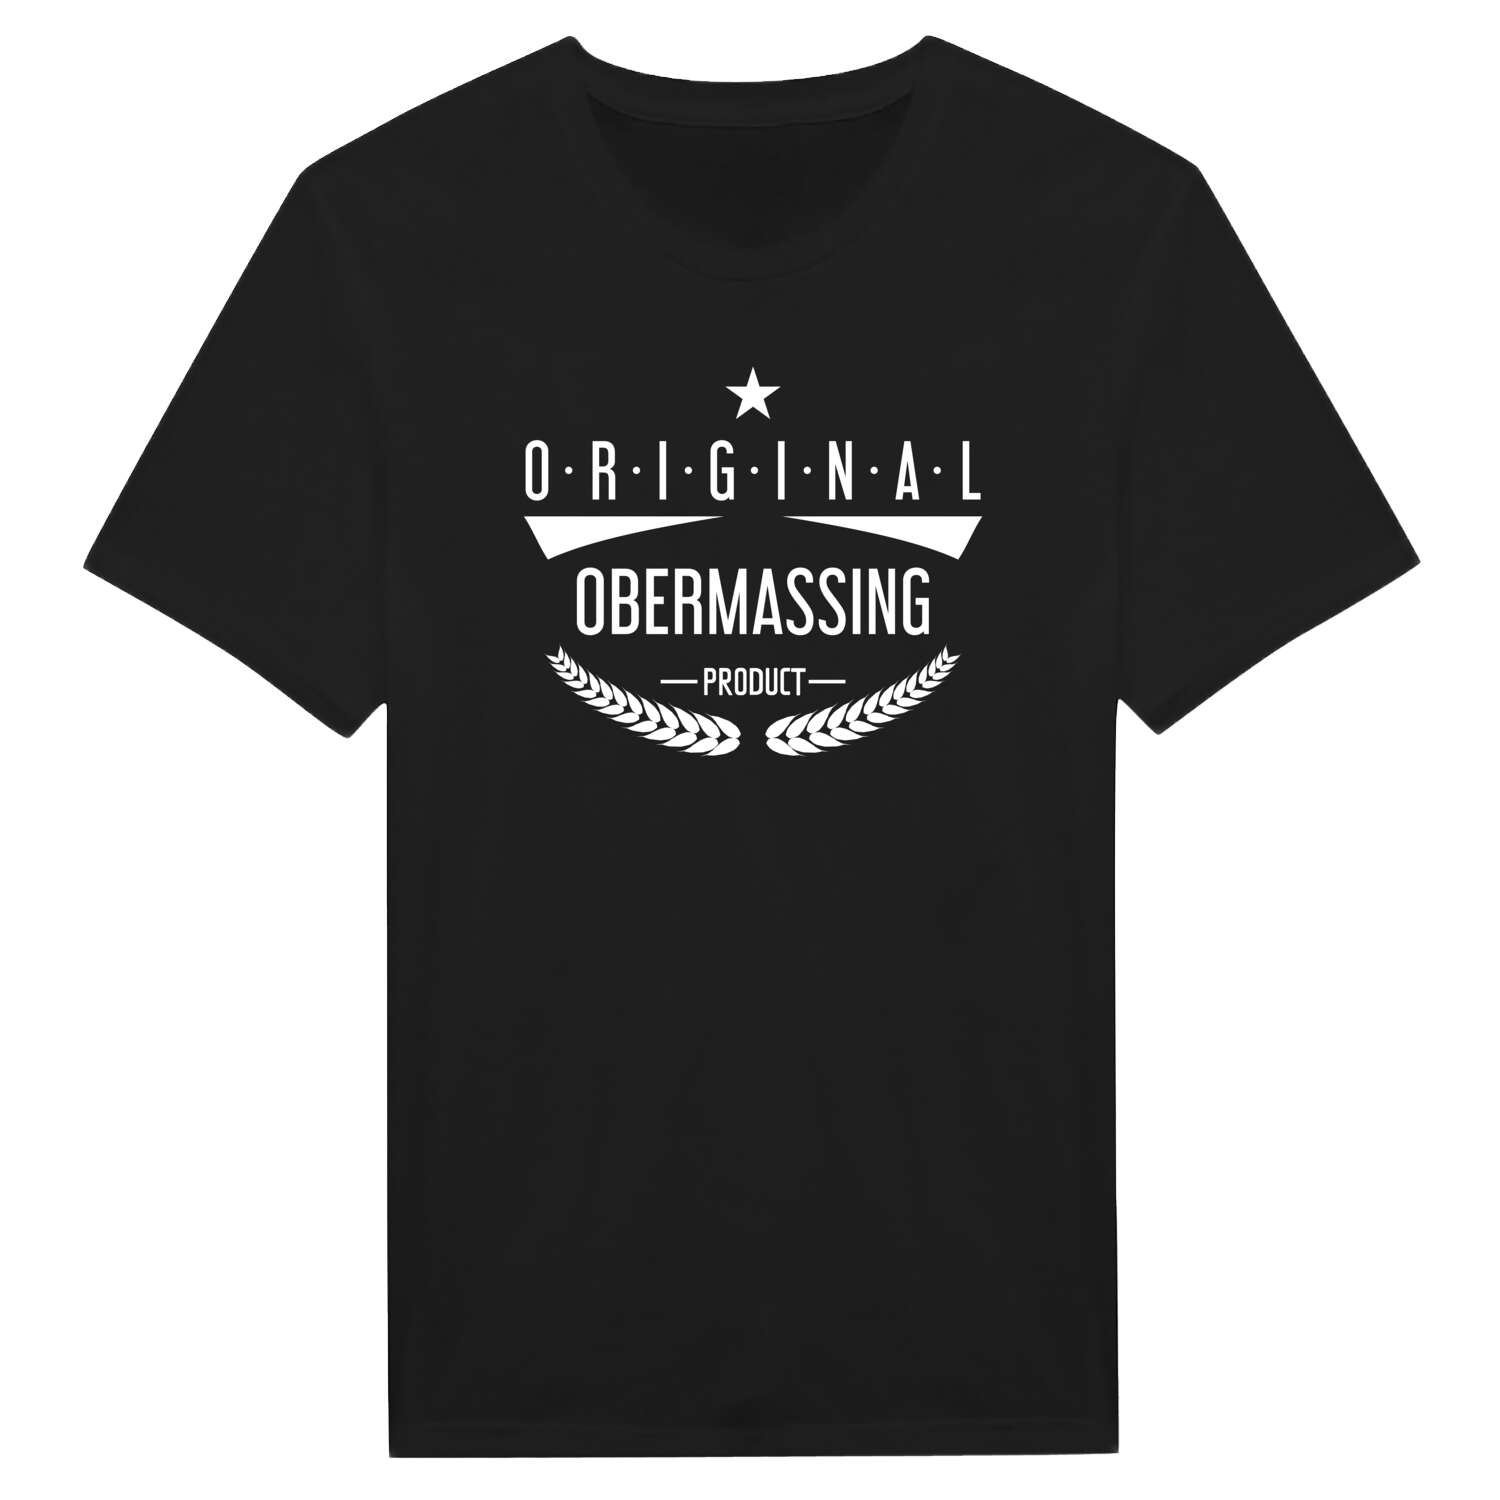 Obermassing T-Shirt »Original Product«